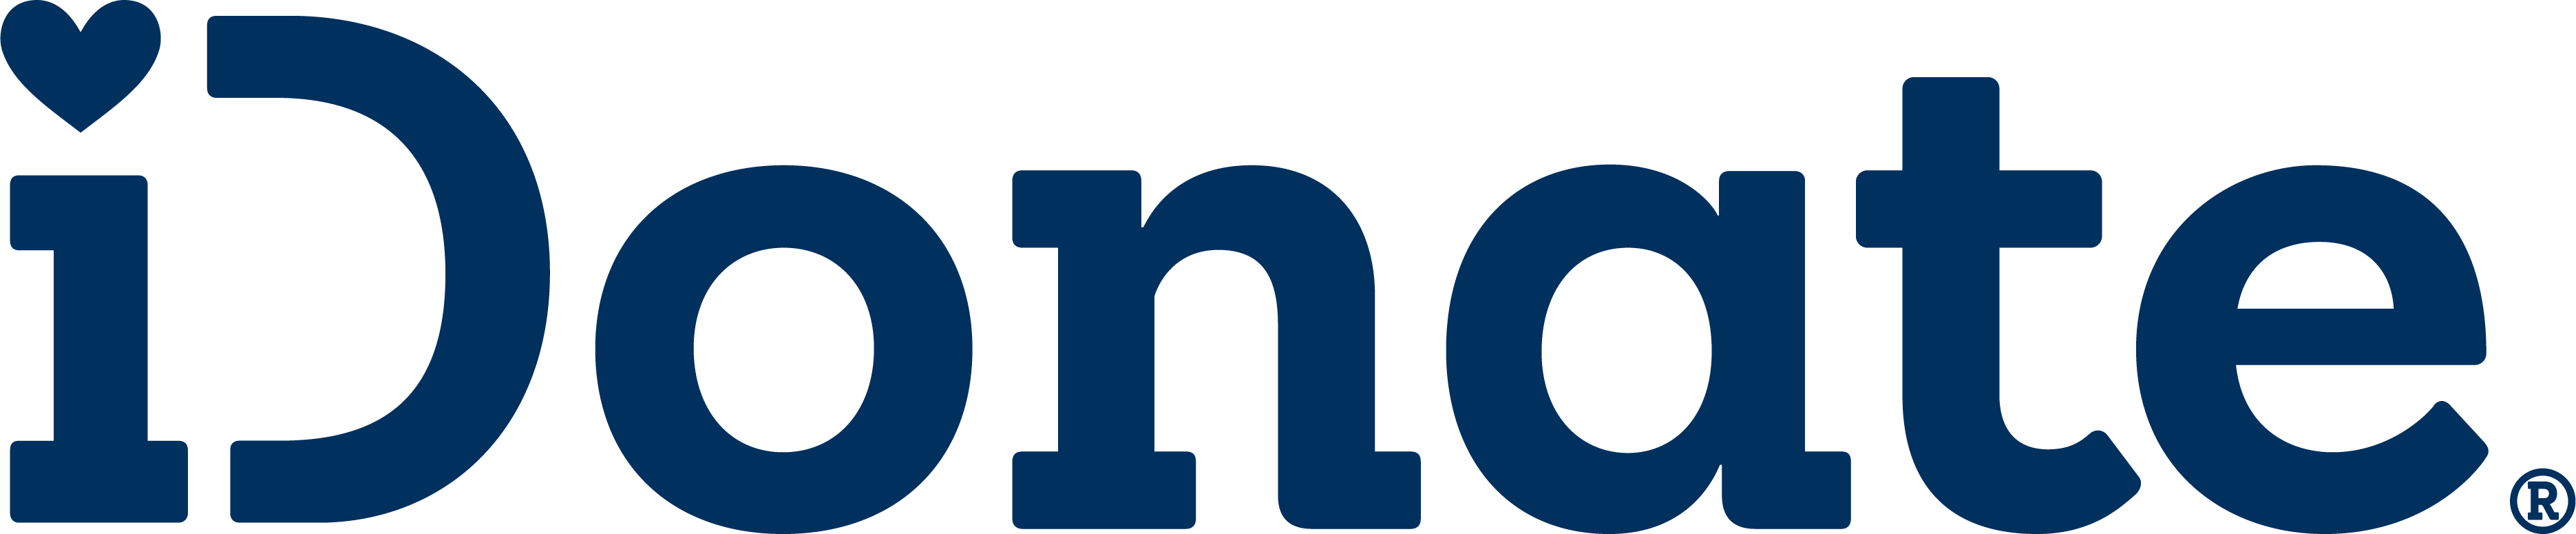 iDonate logo of new series b funding round